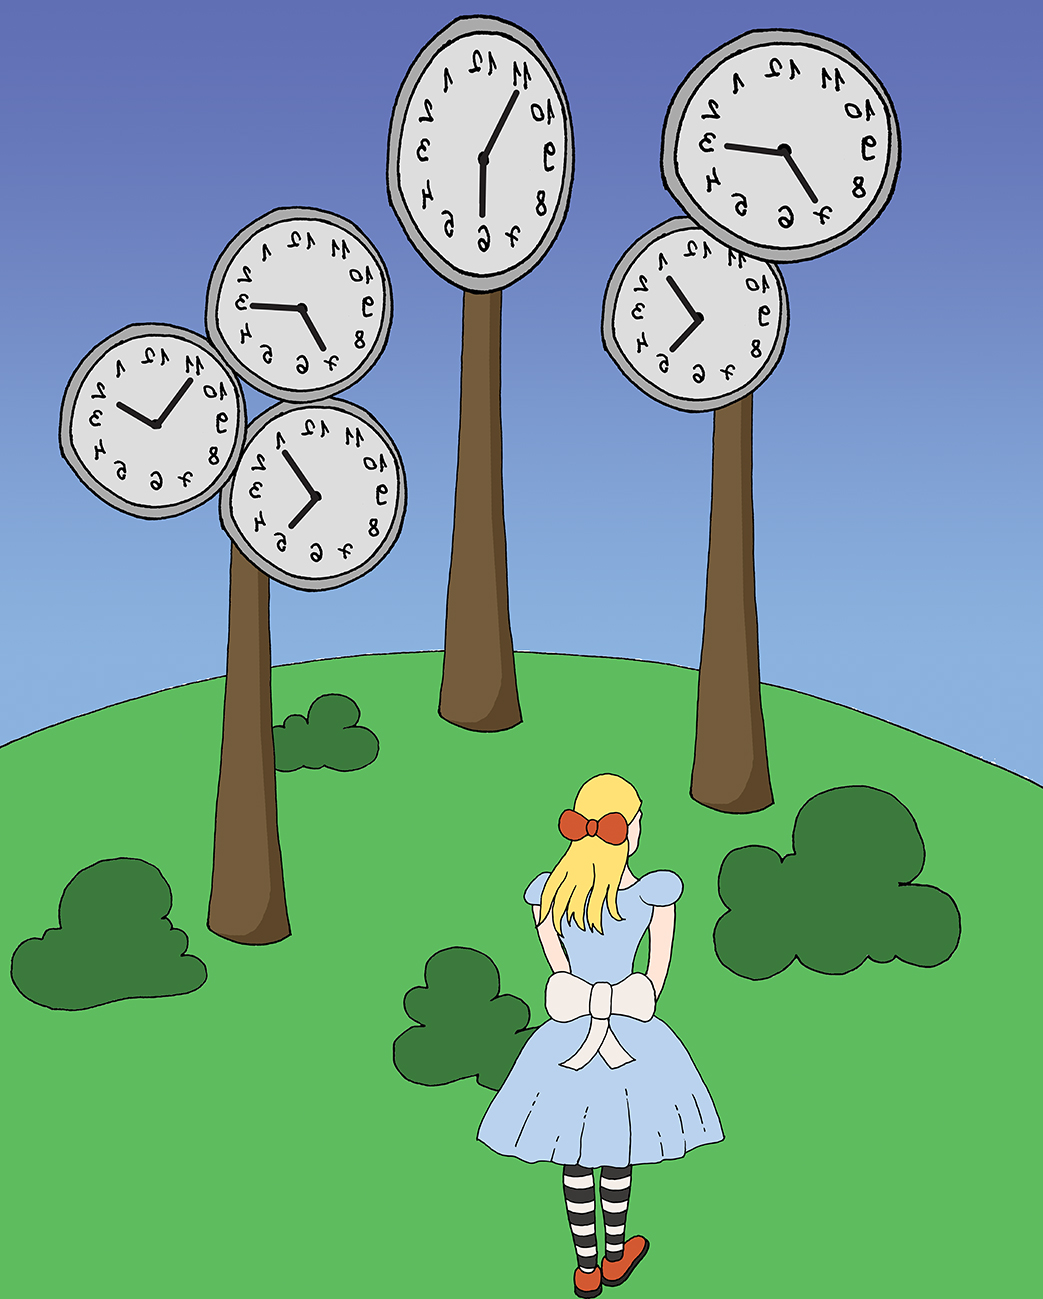 Alisa se nalazi u čudnoj šumi gdje su krošnje satovi s brojevima postavljenima zrcalno.